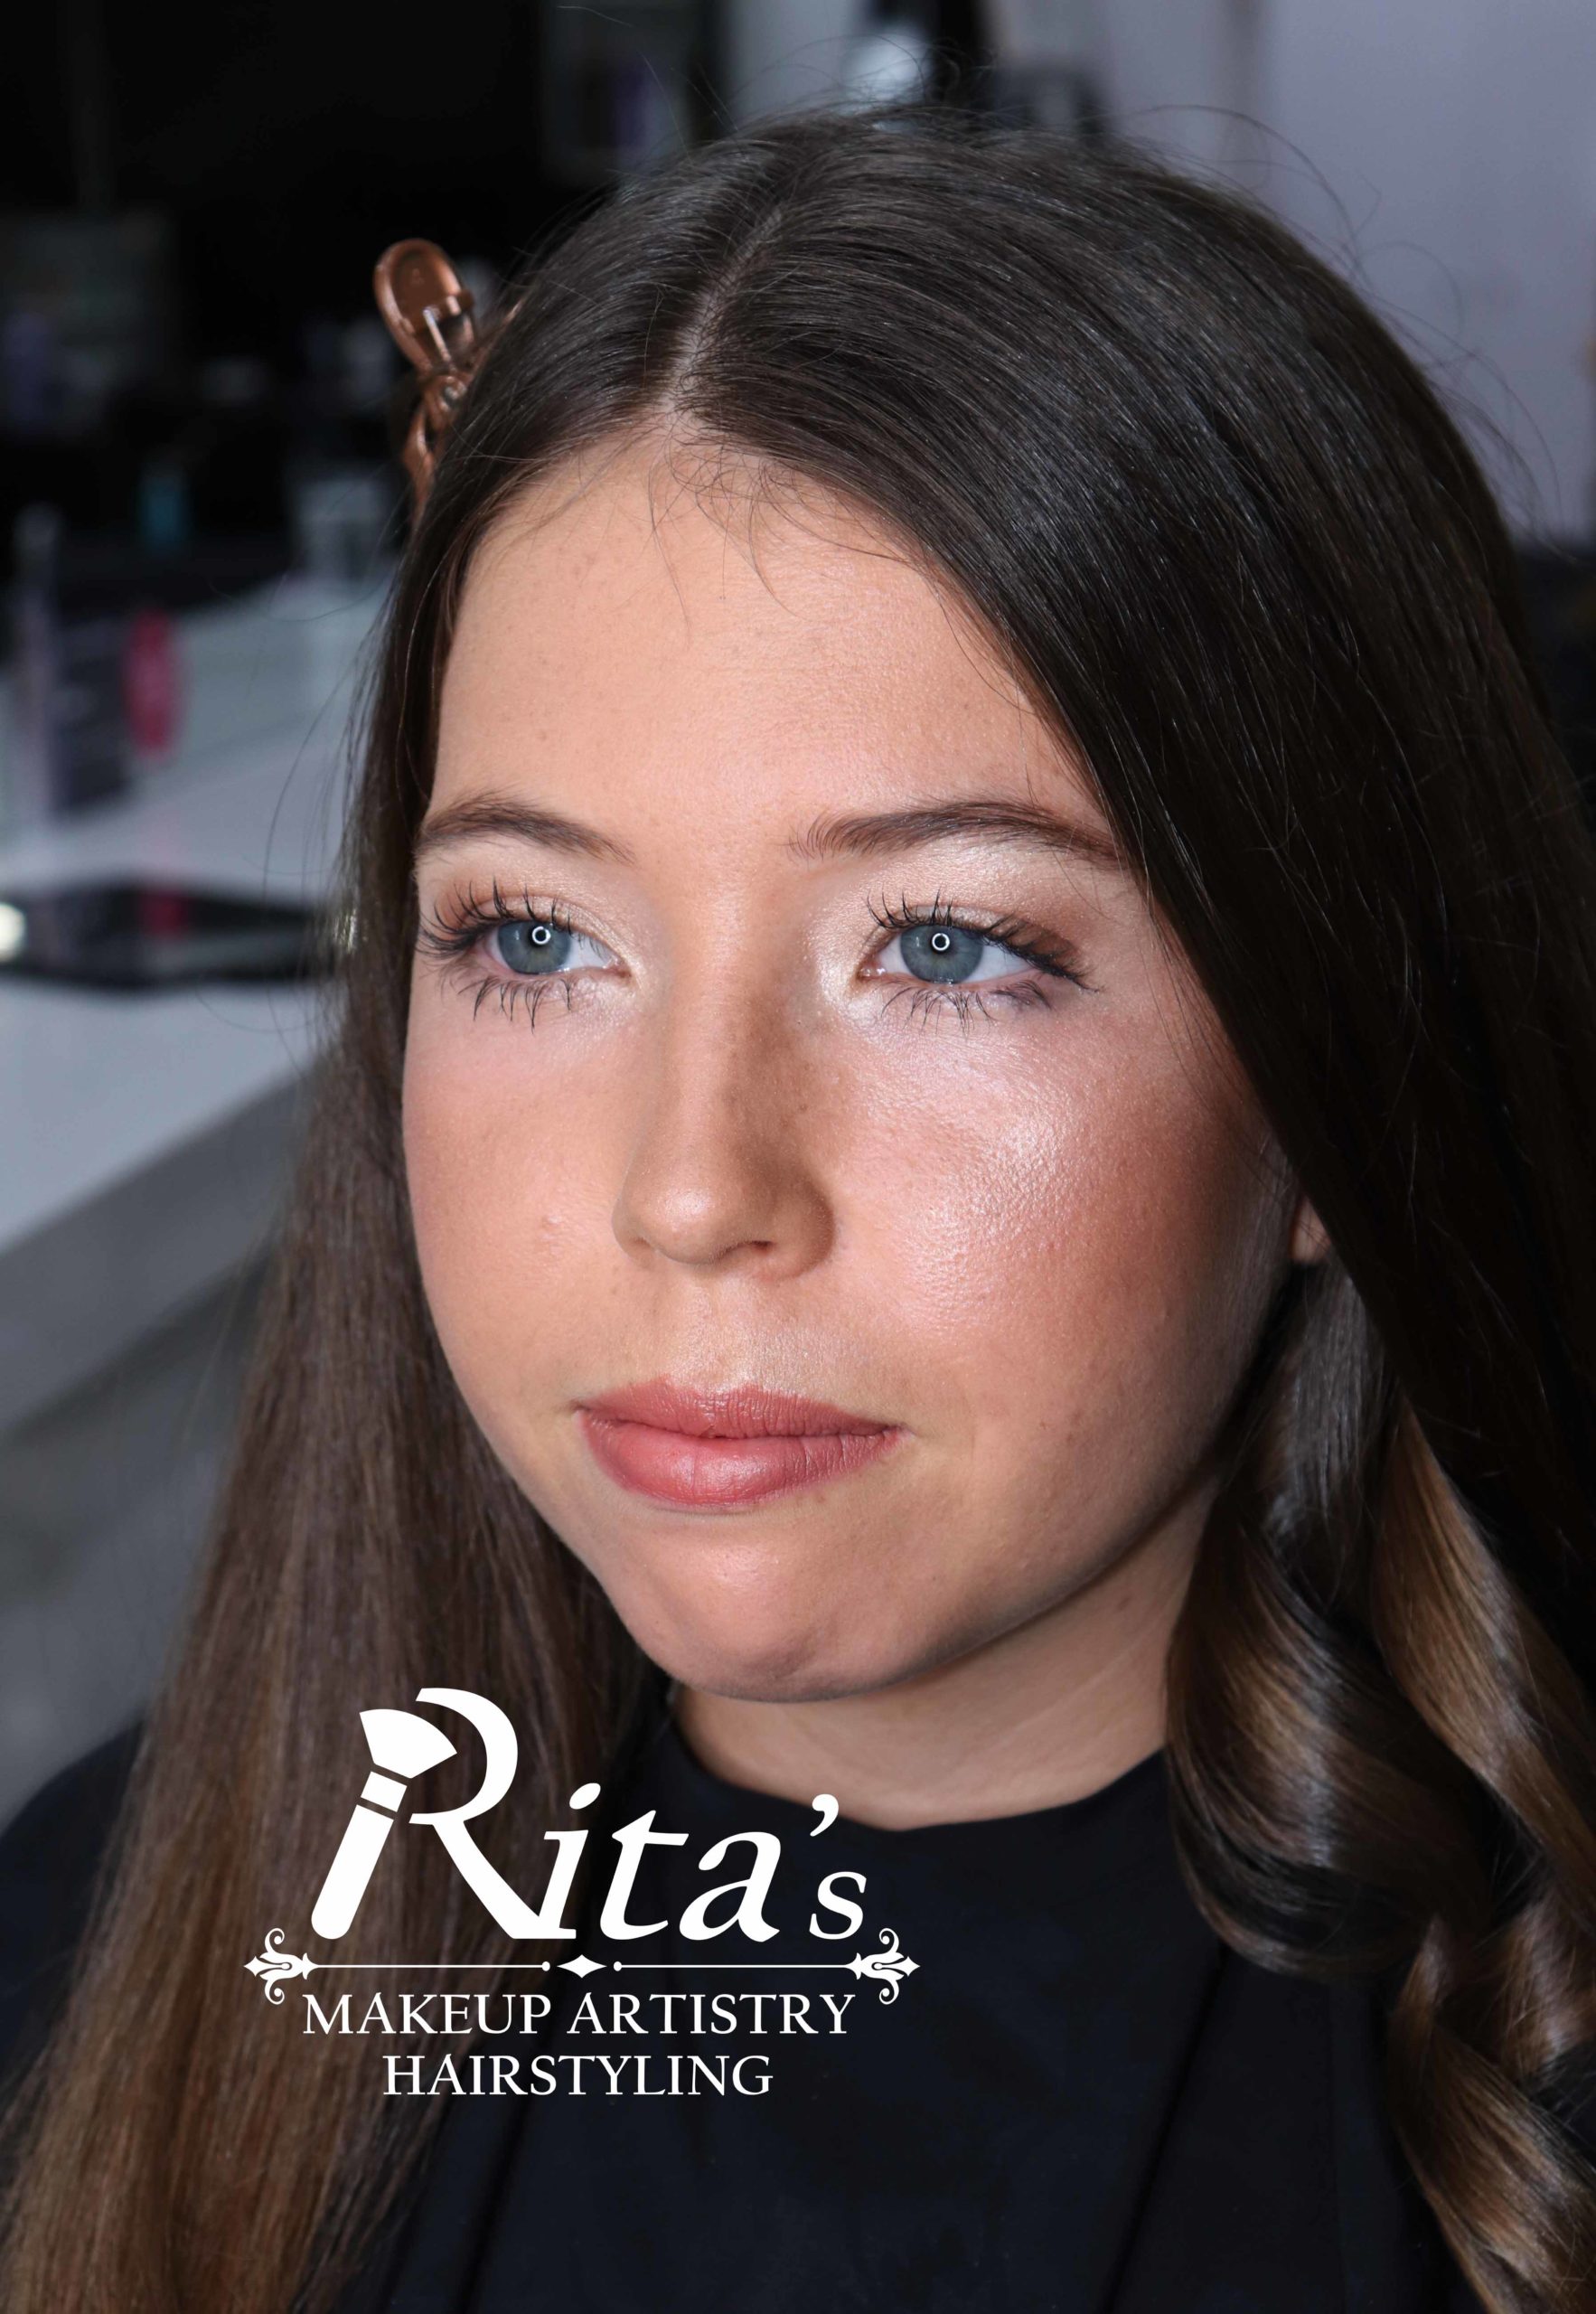 Rita's Makeup Artistry Bridal Wedding Makeup